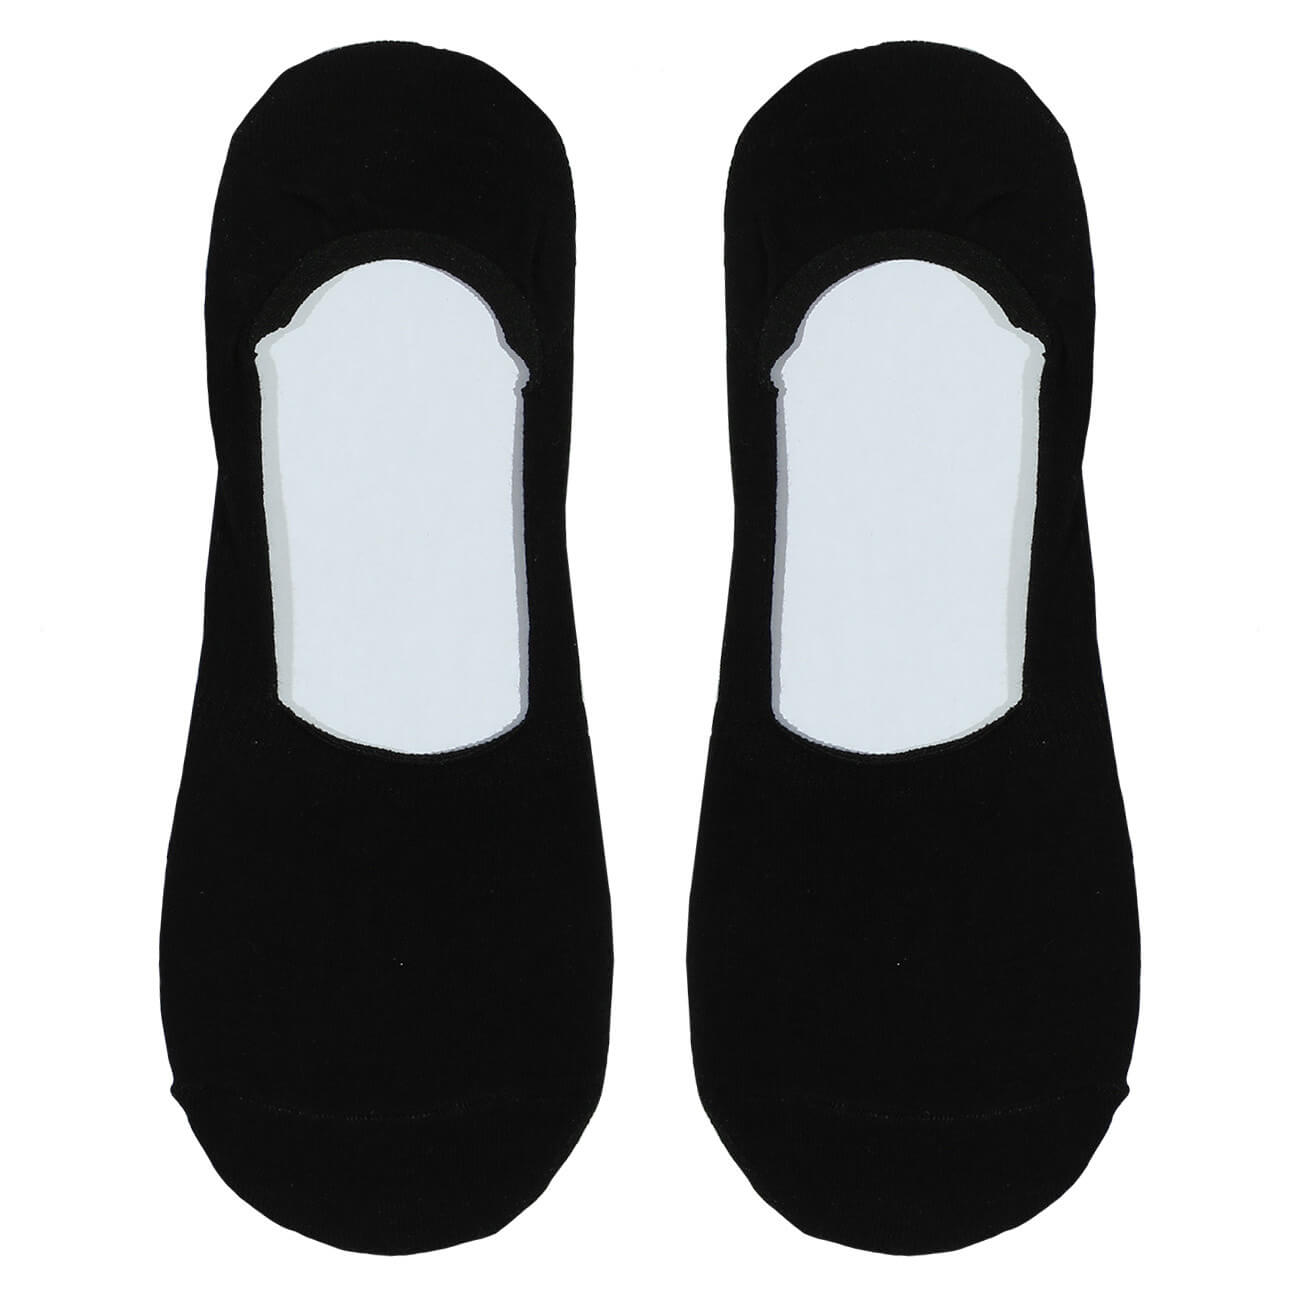 Носки-следки женские, р. 36-38, хлопок/полиэстер, черные, Basic носки следки мужские р 39 42 хлопок полиэстер черные basic